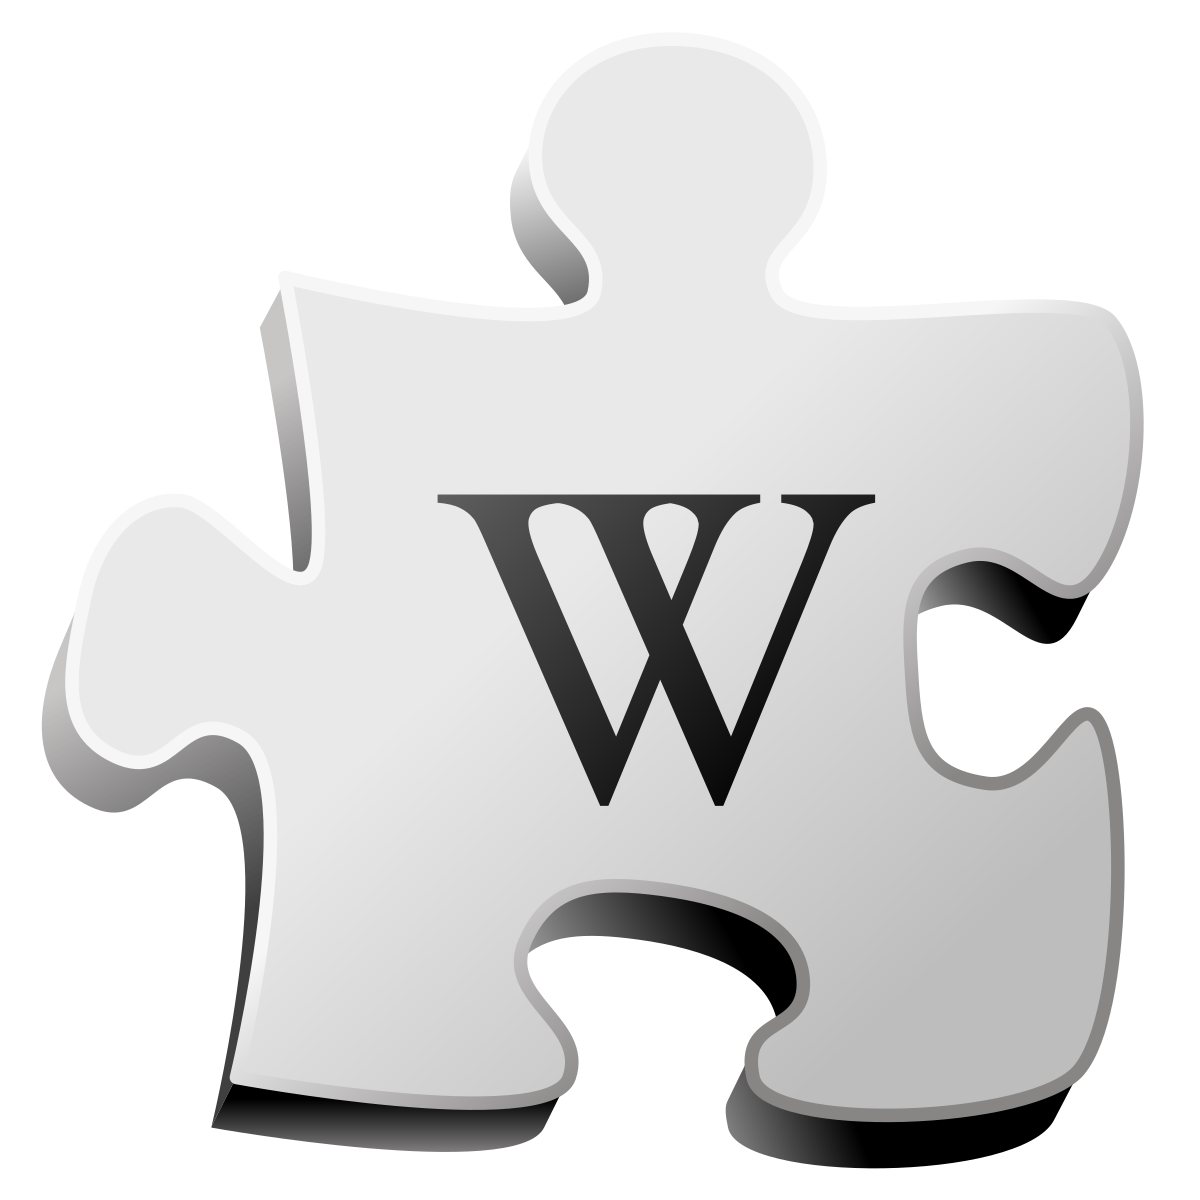 Https ru wikipedia org w index php. Иконка Wiki. Википедия логотип. Символ Википедии. Значок Википедии на прозрачном фоне.